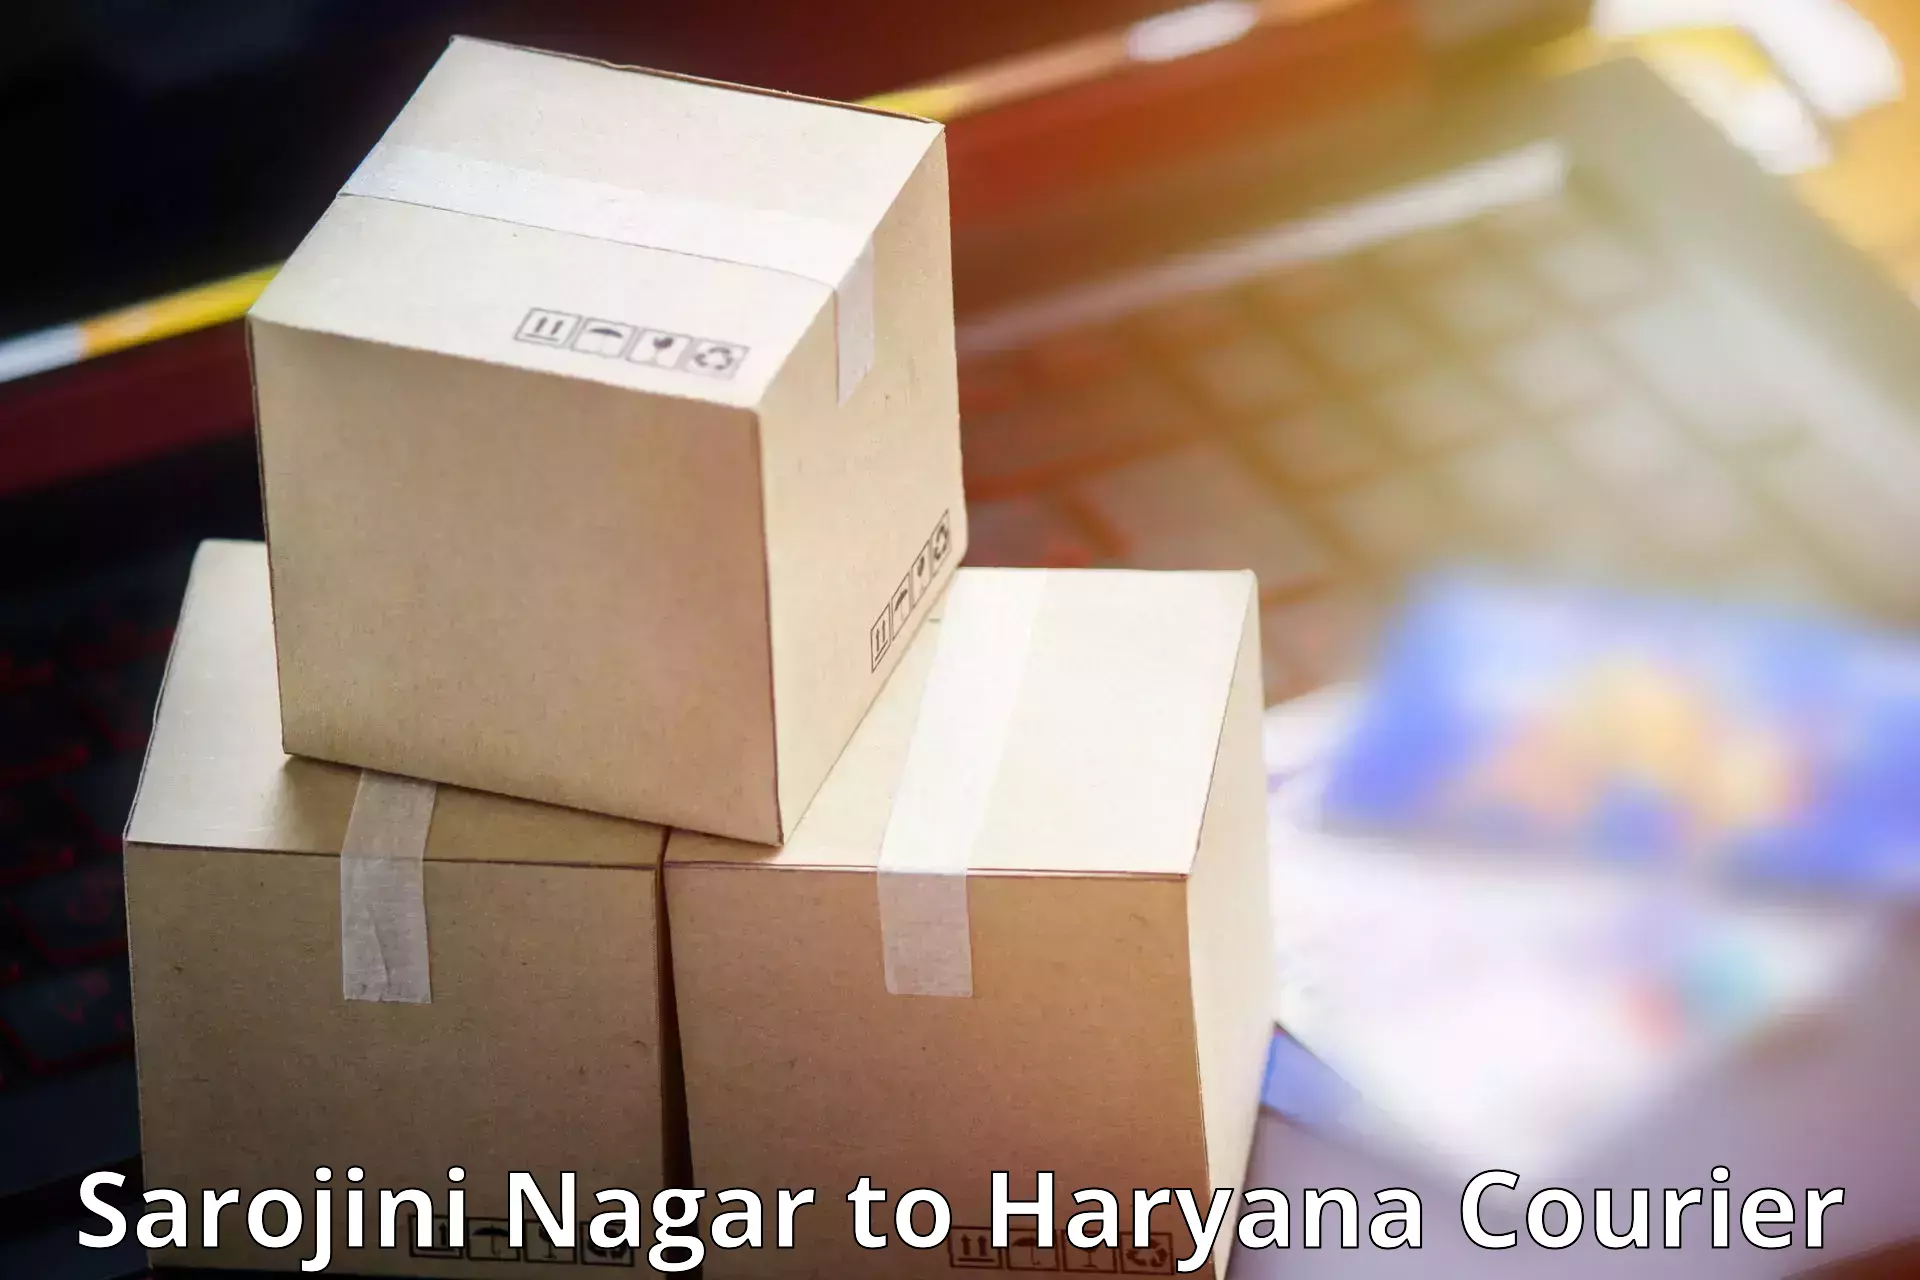 Customer-centric shipping Sarojini Nagar to Gohana